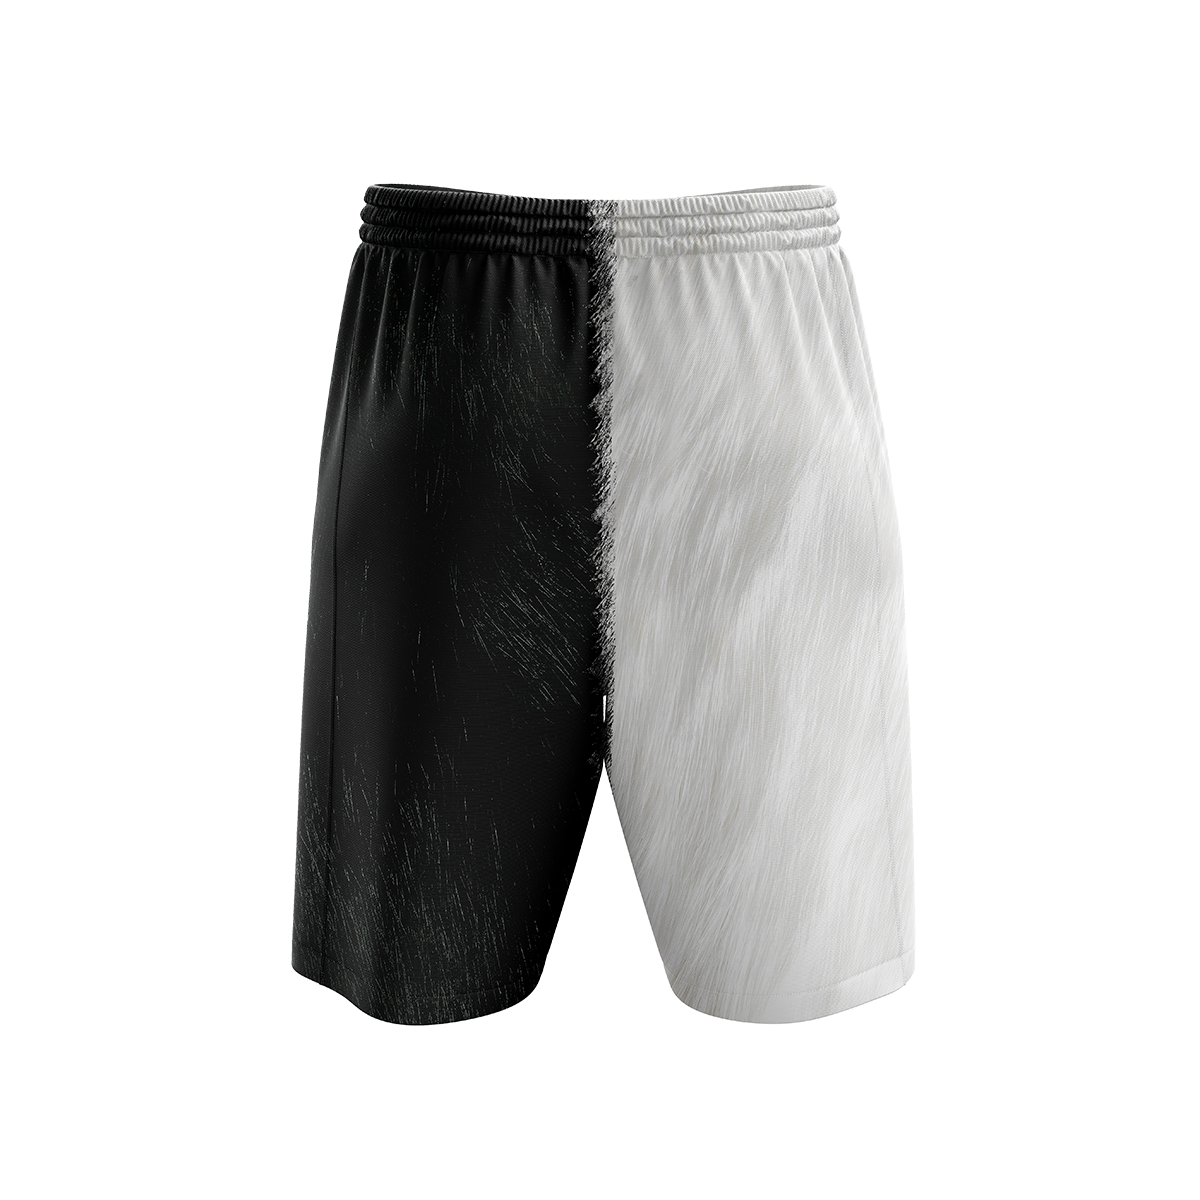 Yin Yang Cats Beach Shorts Short